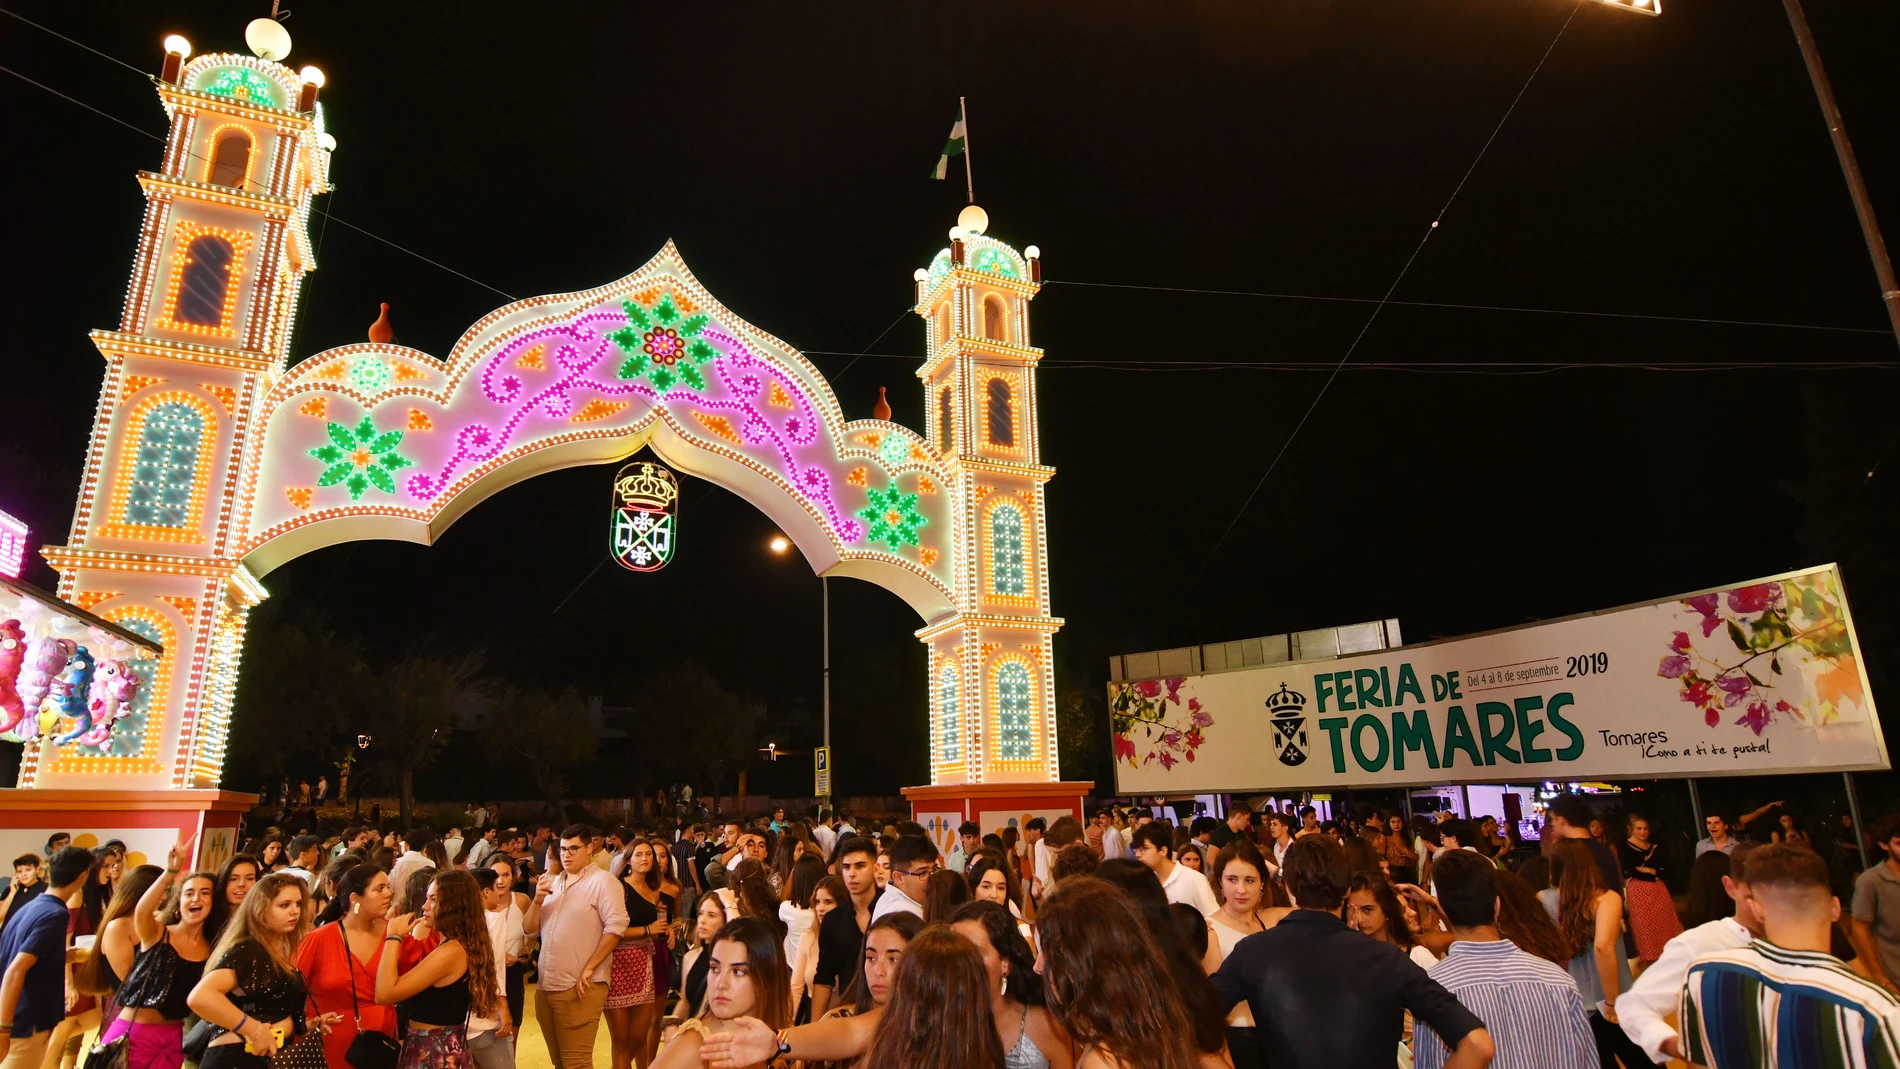 La Feria de Tomares viene siendo una de las fiestas señeras de la provincia